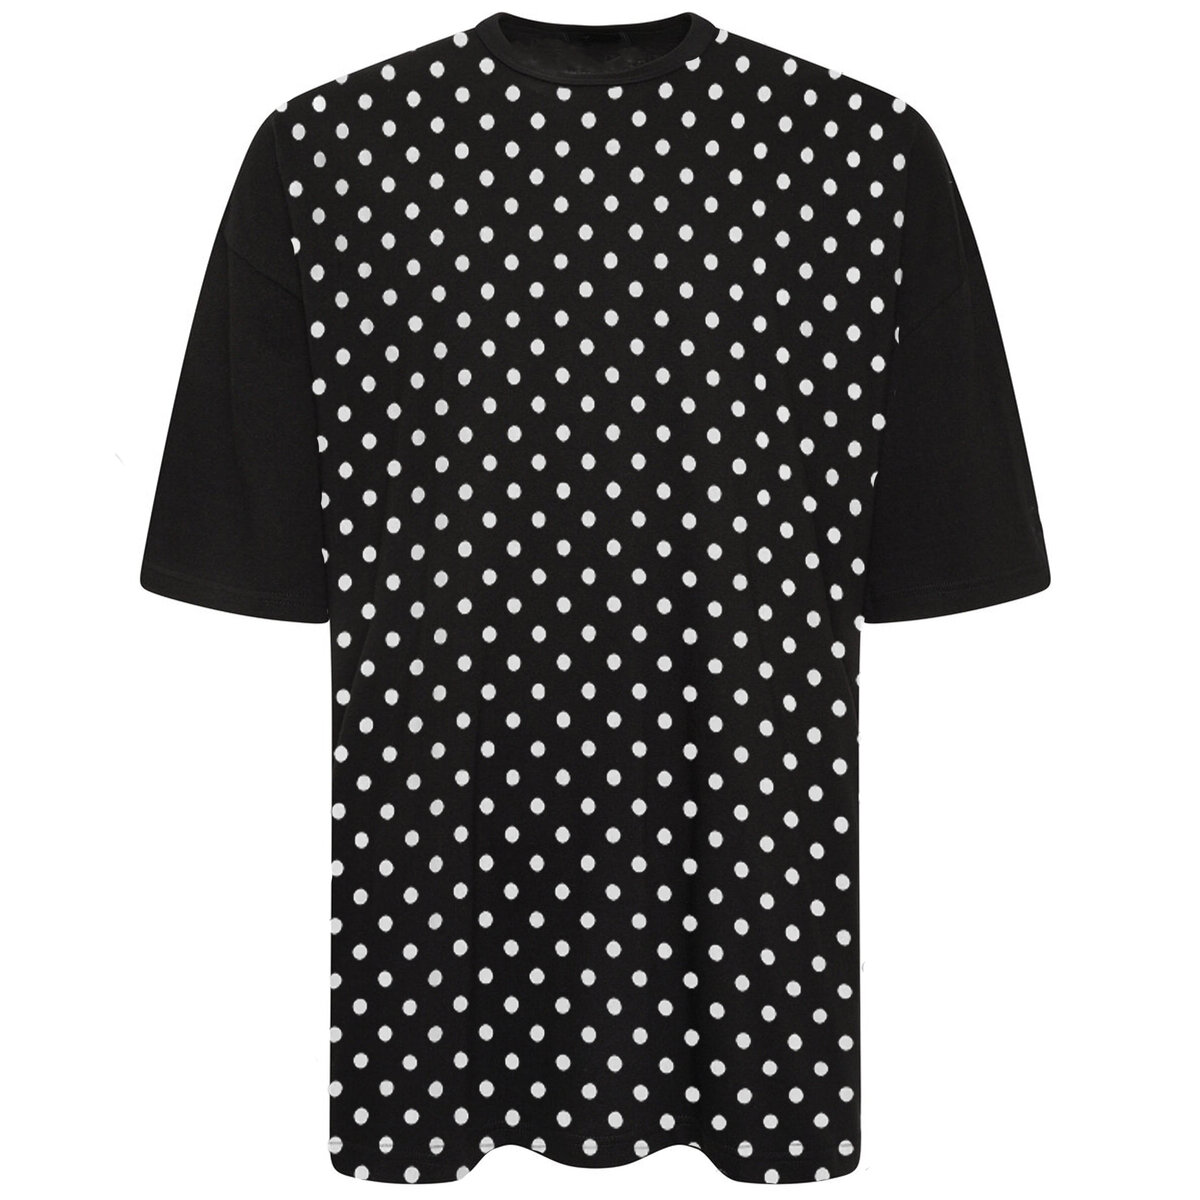 Short-sleeved Polka Dot T-shirt S Black/white